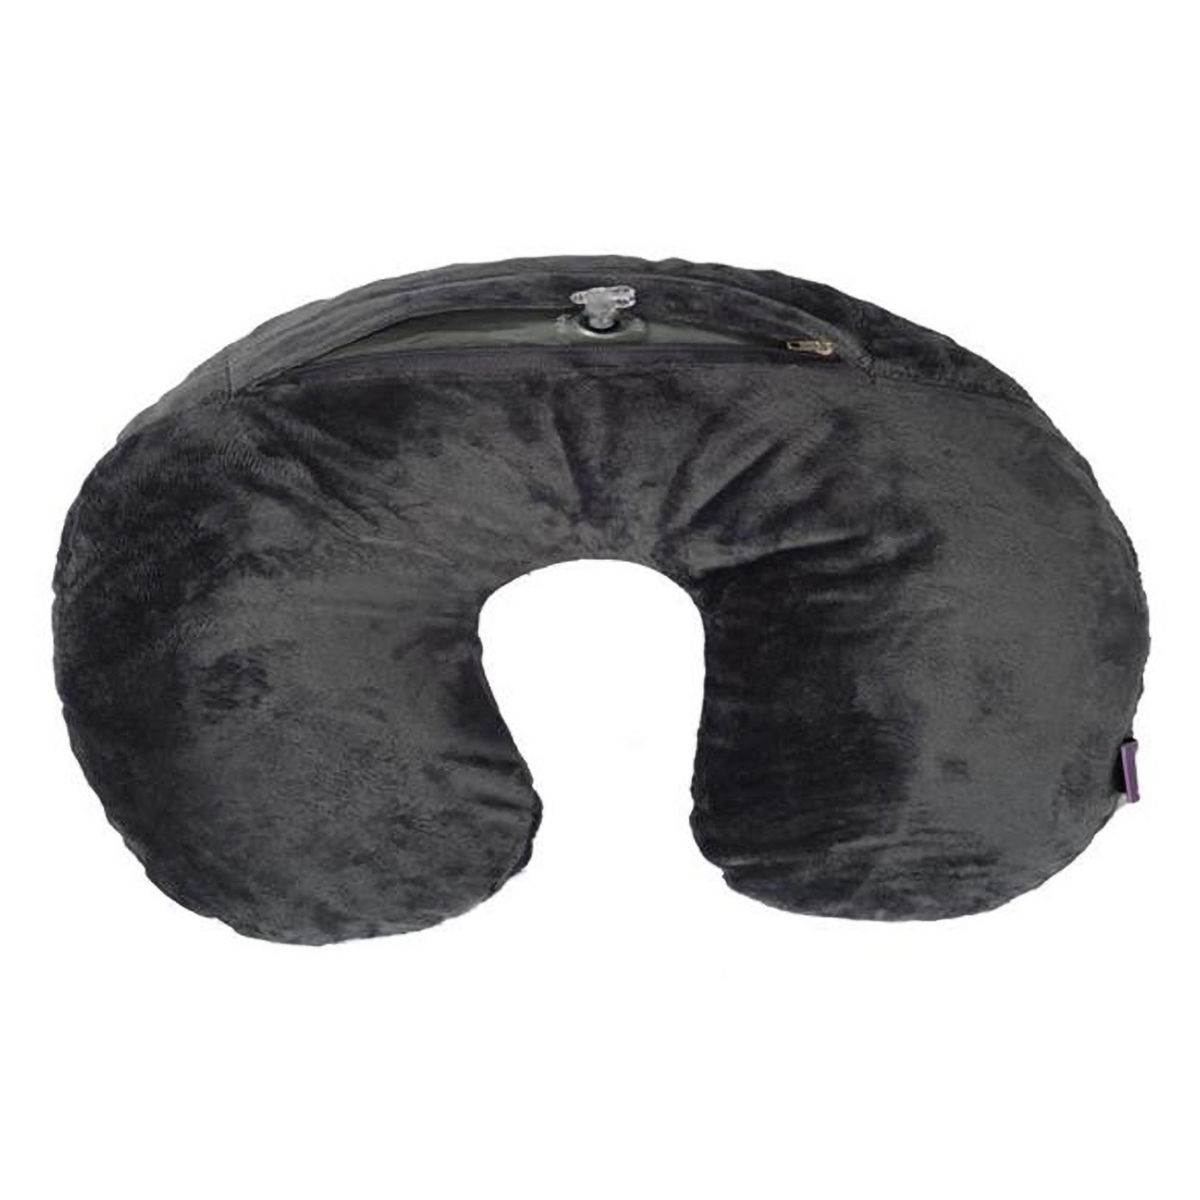 Buy Viaggi Air Neck Pillow Fleece Cover, 1 Count Online